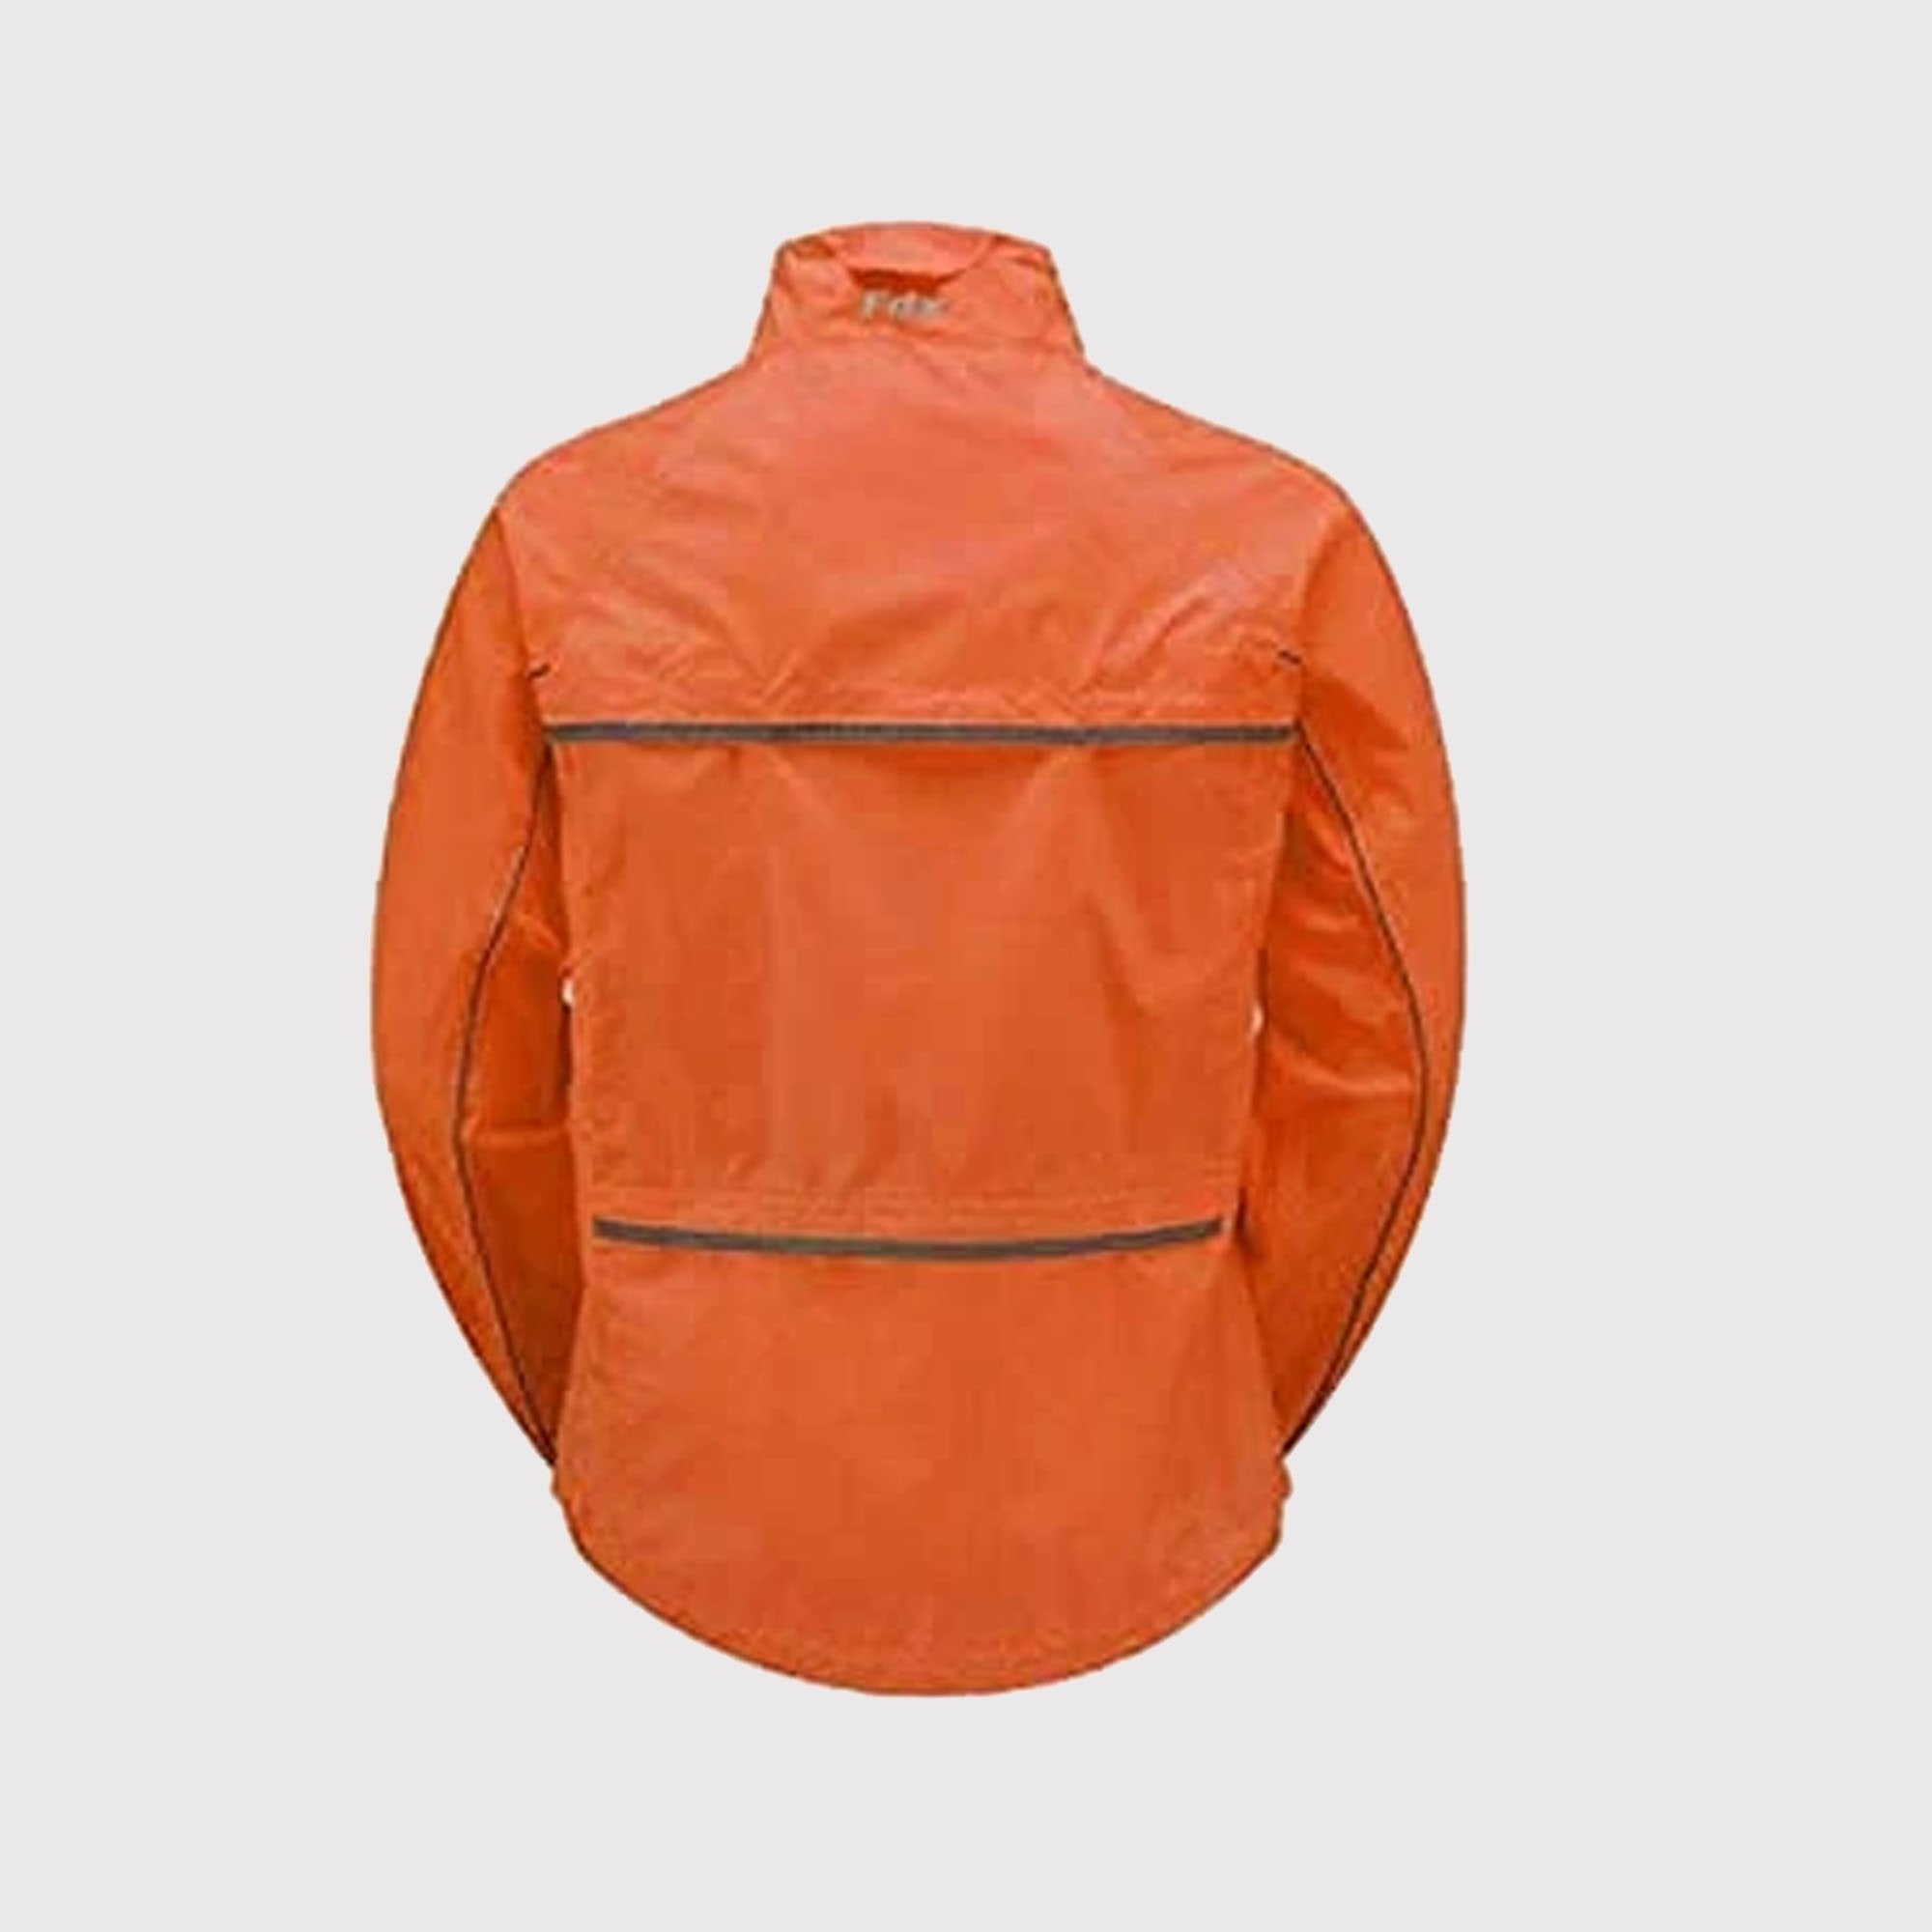 Fdx Defray Orange Men's Waterproof Cycling Jacket